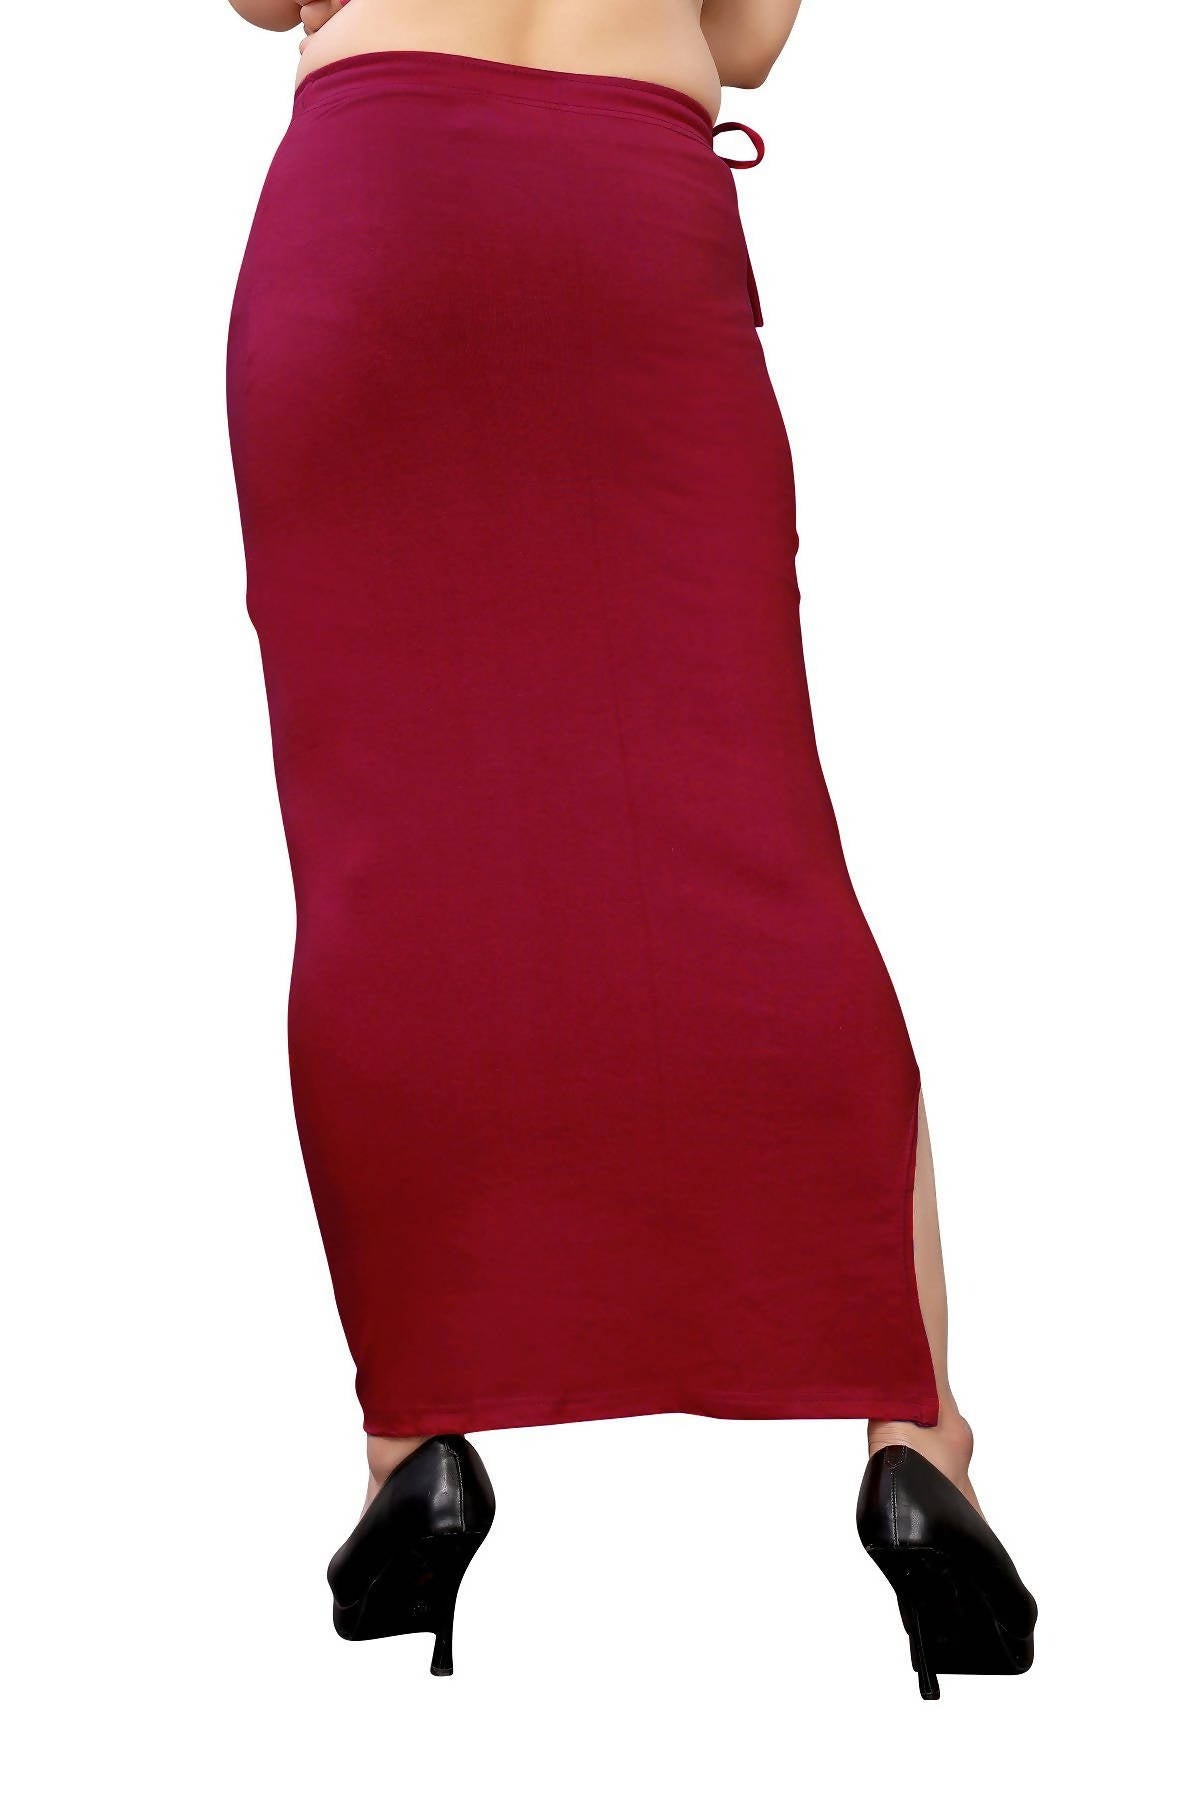 Vamika Maroon Cotton Lycra Petticoat - Distacart